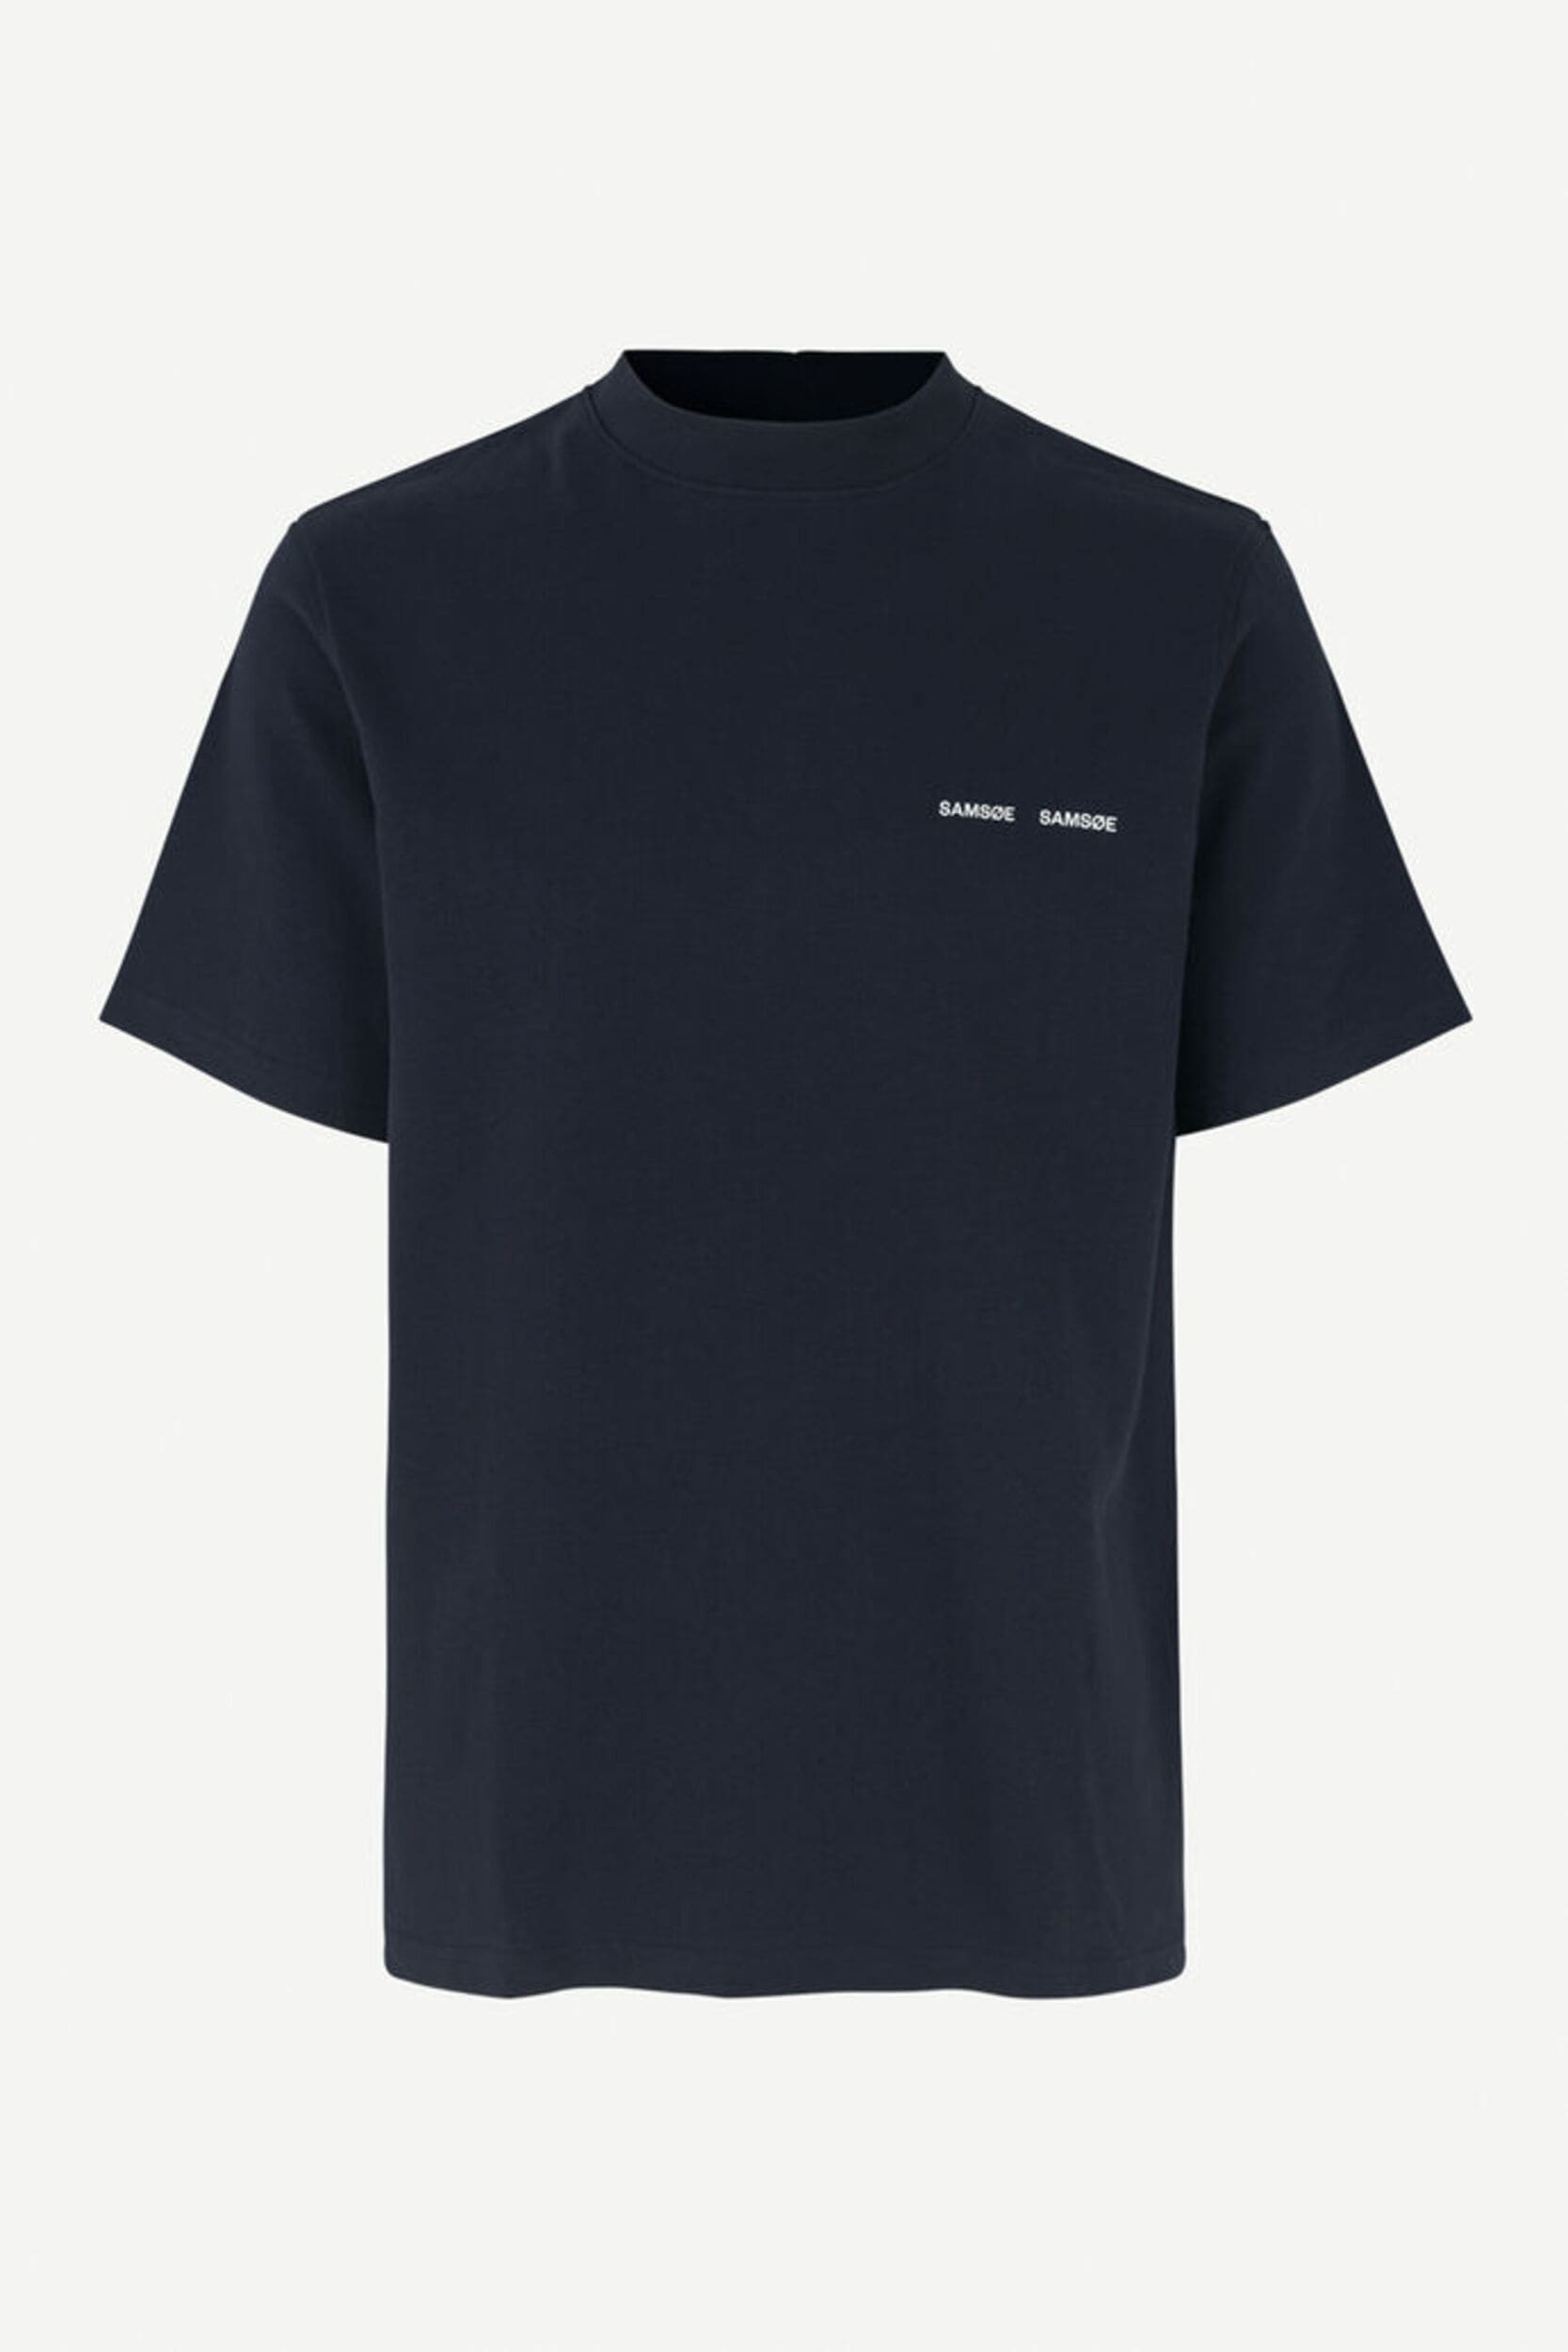 T-shirt Norsbro de la marque Samsoe Samsoe pour homme couleur sky captain de face